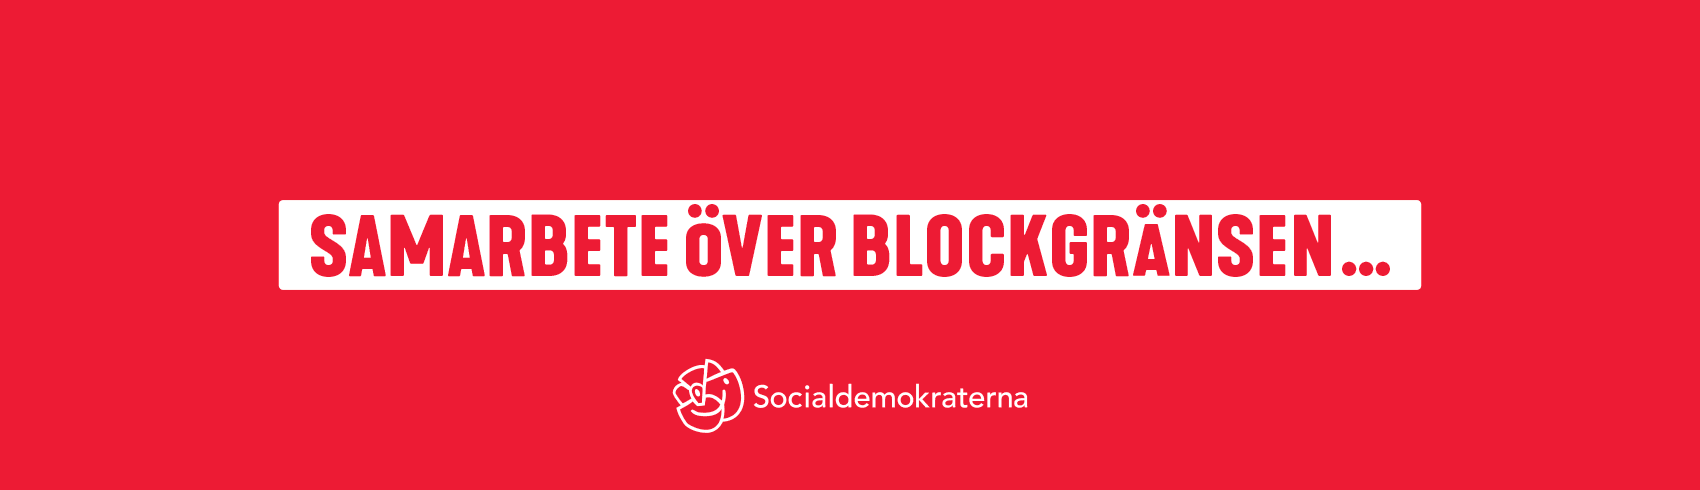 Socialdemokraterna, valrörelsen 2018